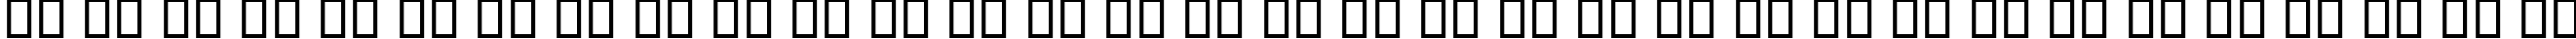 Пример написания русского алфавита шрифтом B Koodak Bold